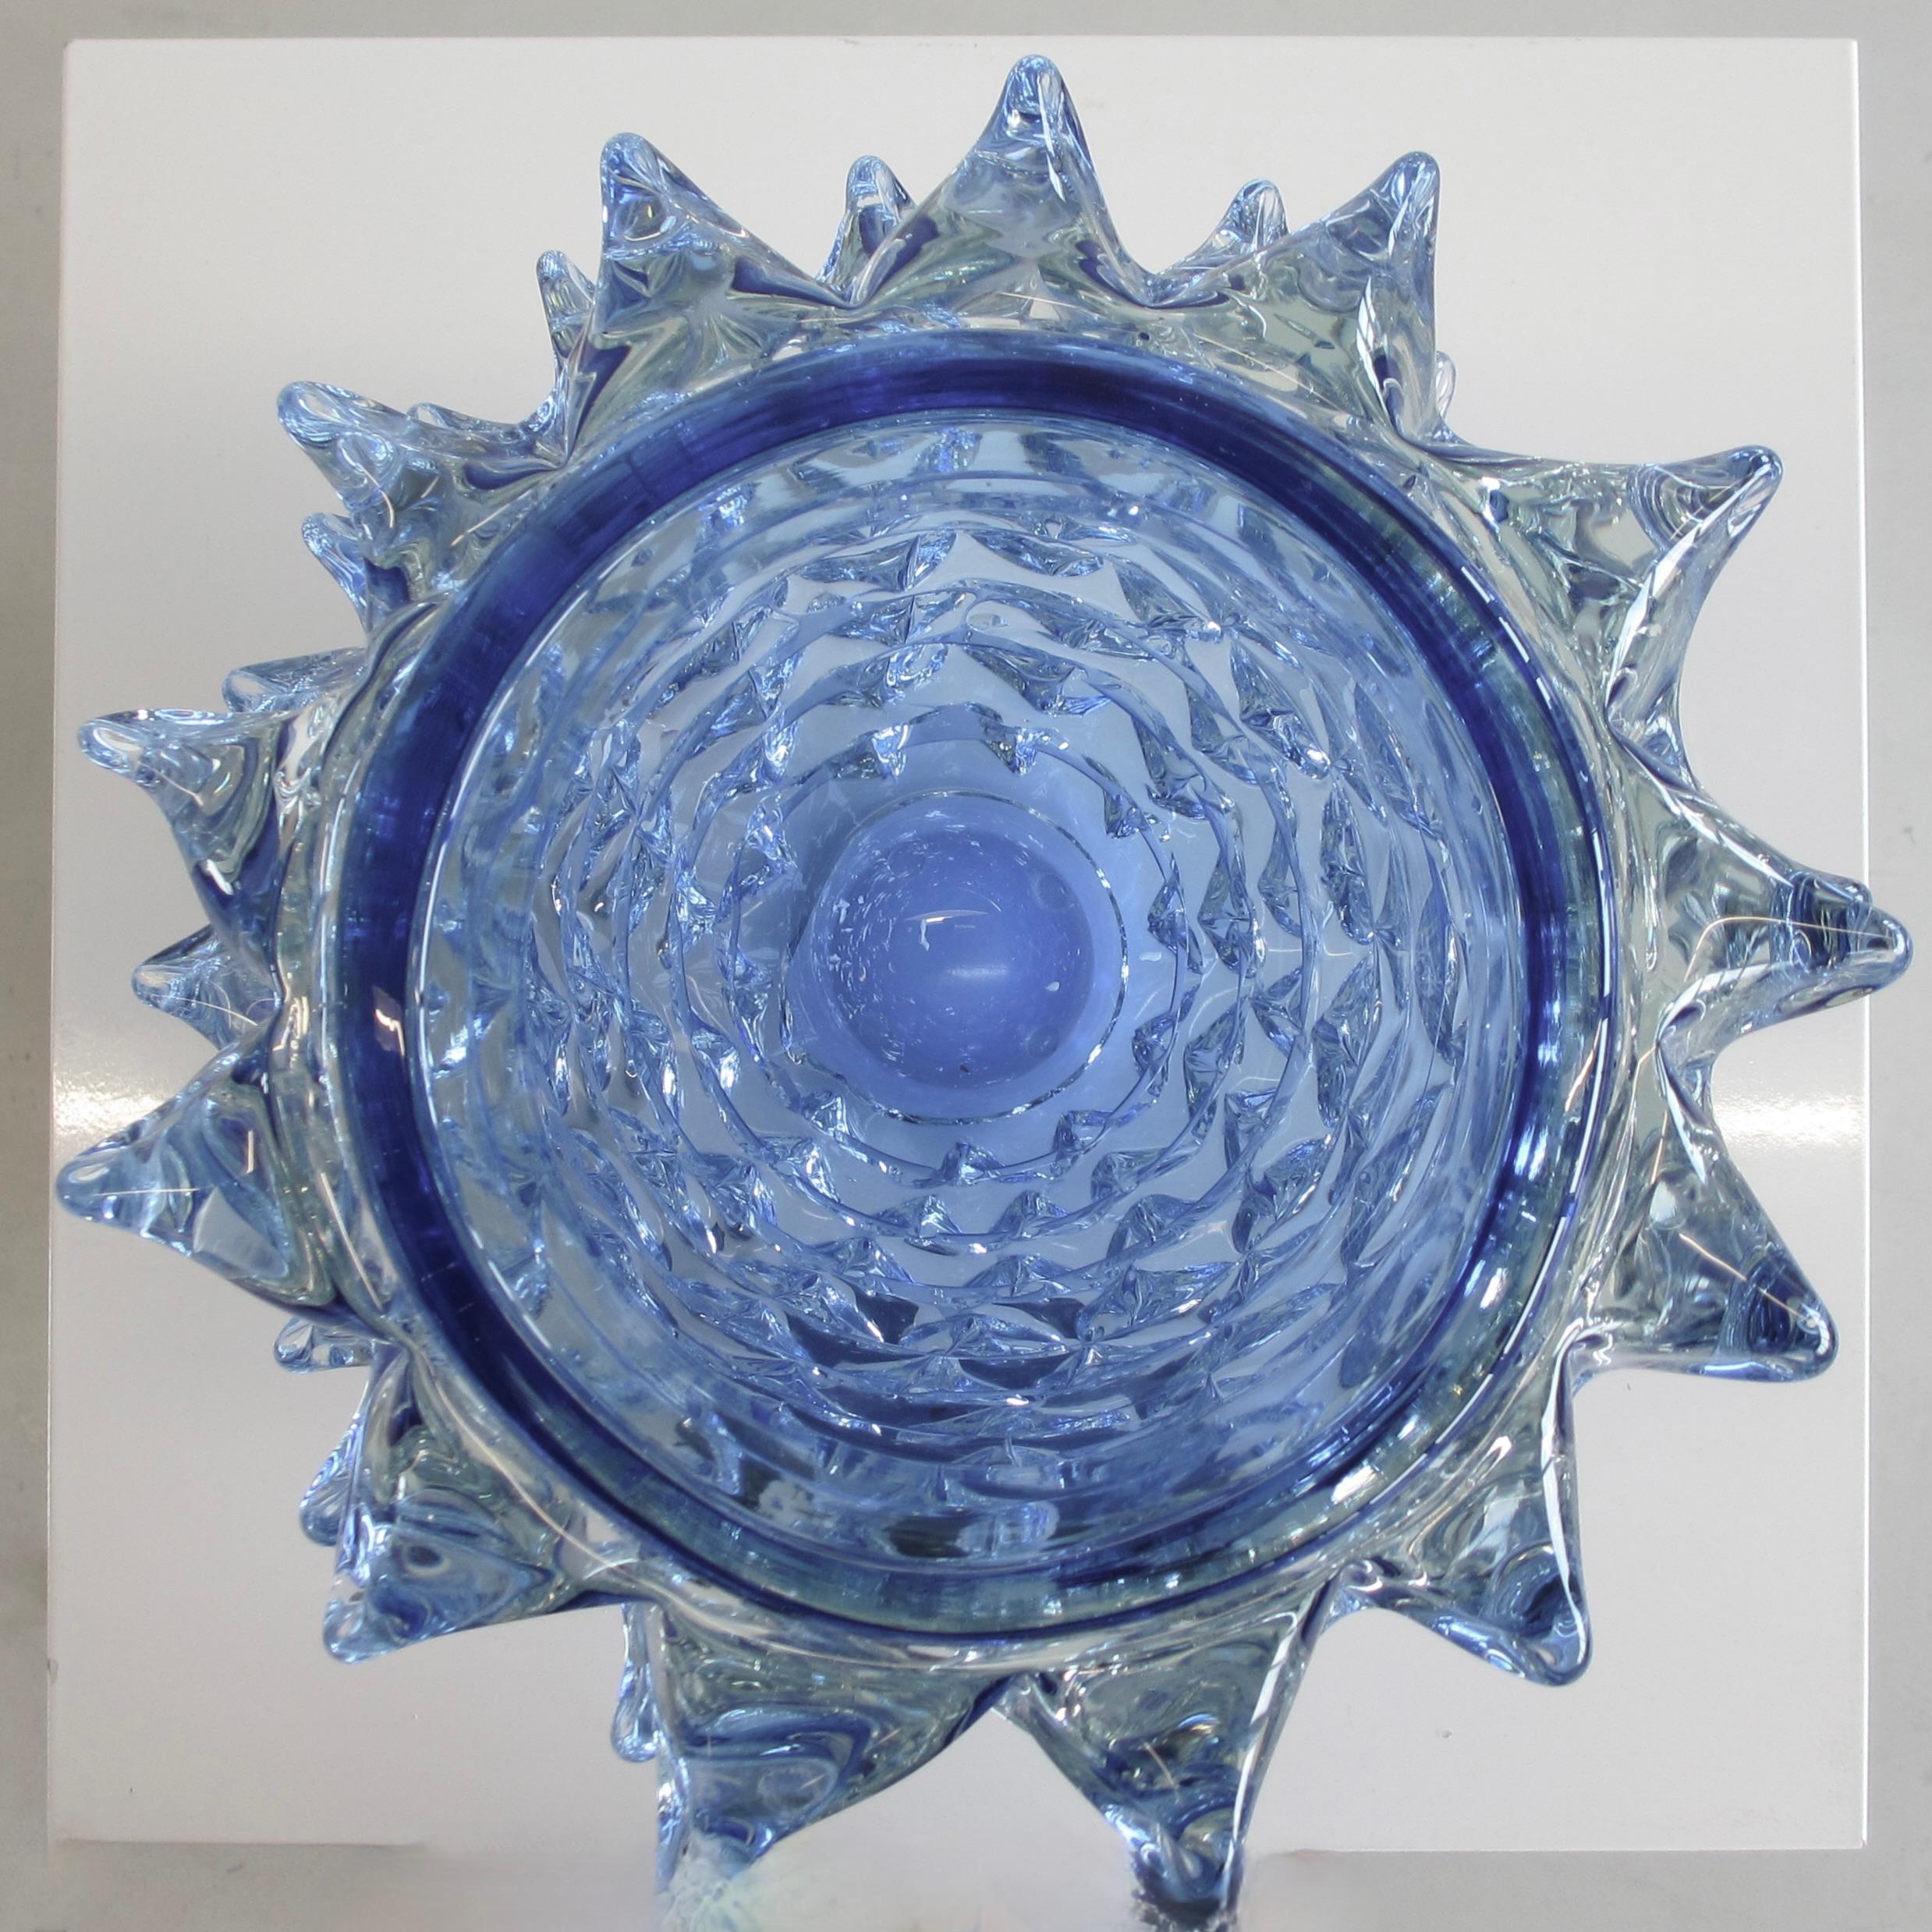 Grand vase en verre soufflé à la main, Italie, Murano.

Vase en verre bleu à pointes, gravé d'une signature sur la base. Pièce lourde et décorative, fabriquée à Murano. Signé.

.